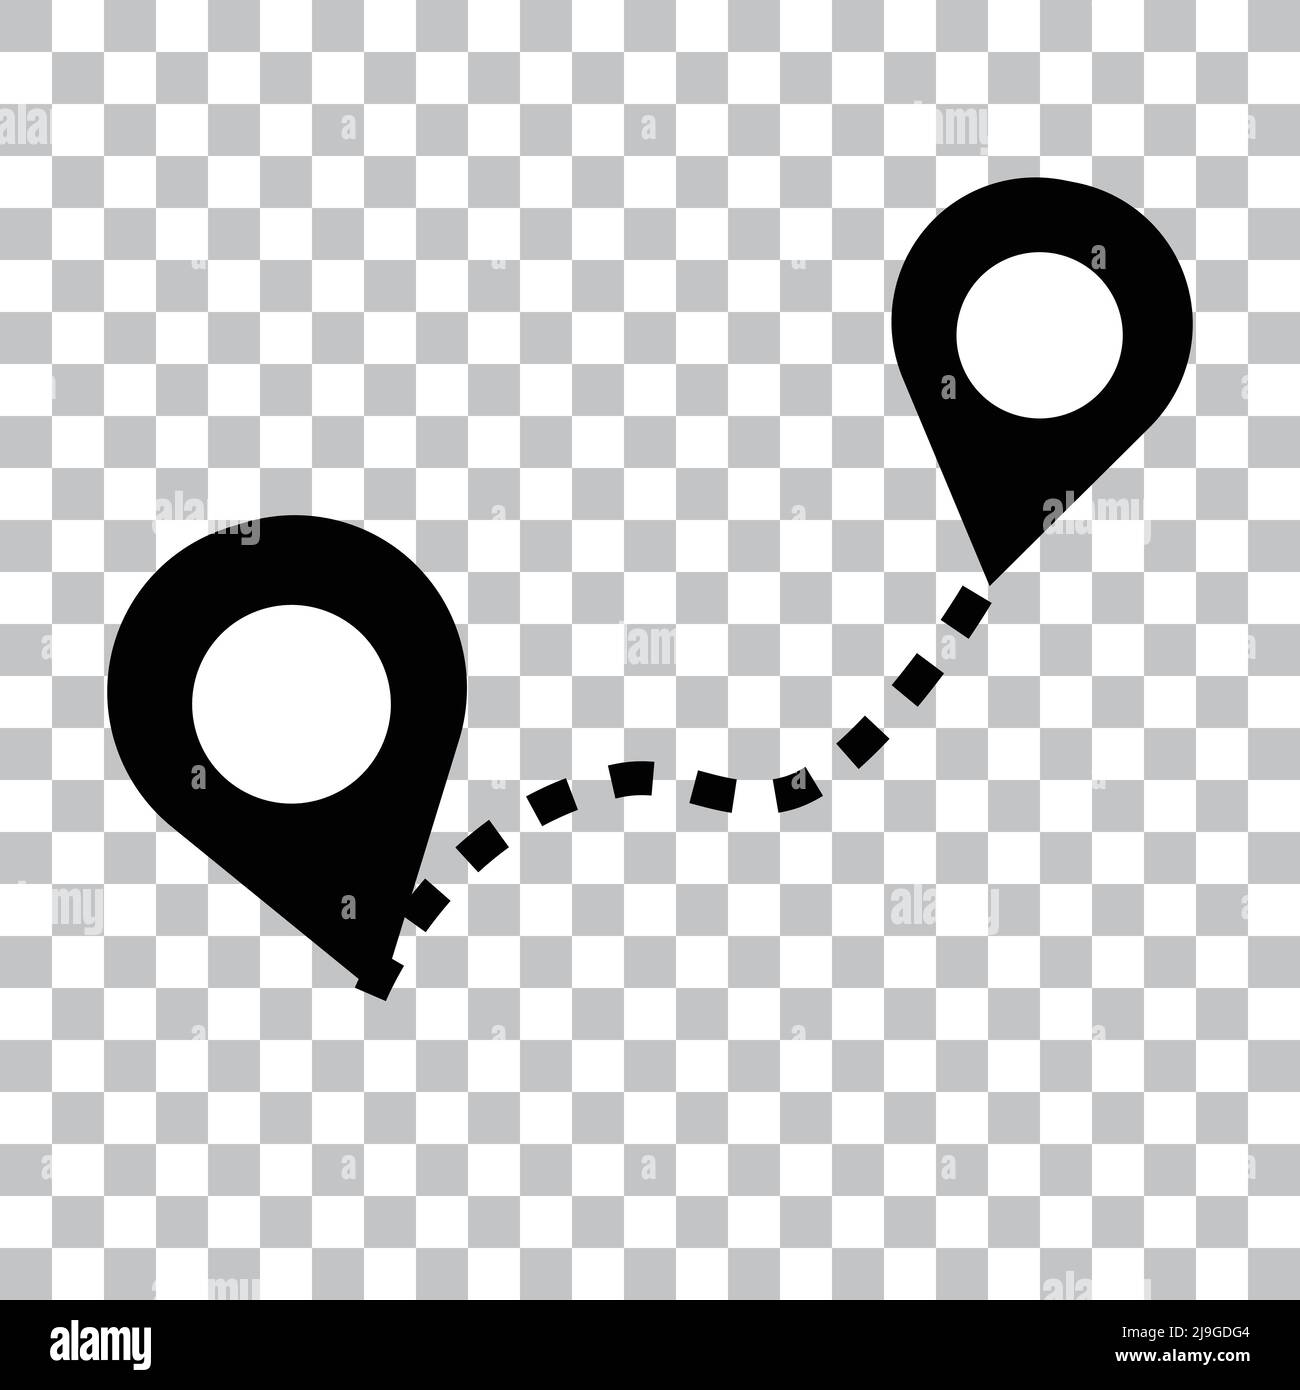 Icona vettoriale di un pin della mappa collegato da una linea tratteggiata. Questa illustrazione è ideale per mostrare le relazioni di posizione. Vettore modificabile. Illustrazione Vettoriale